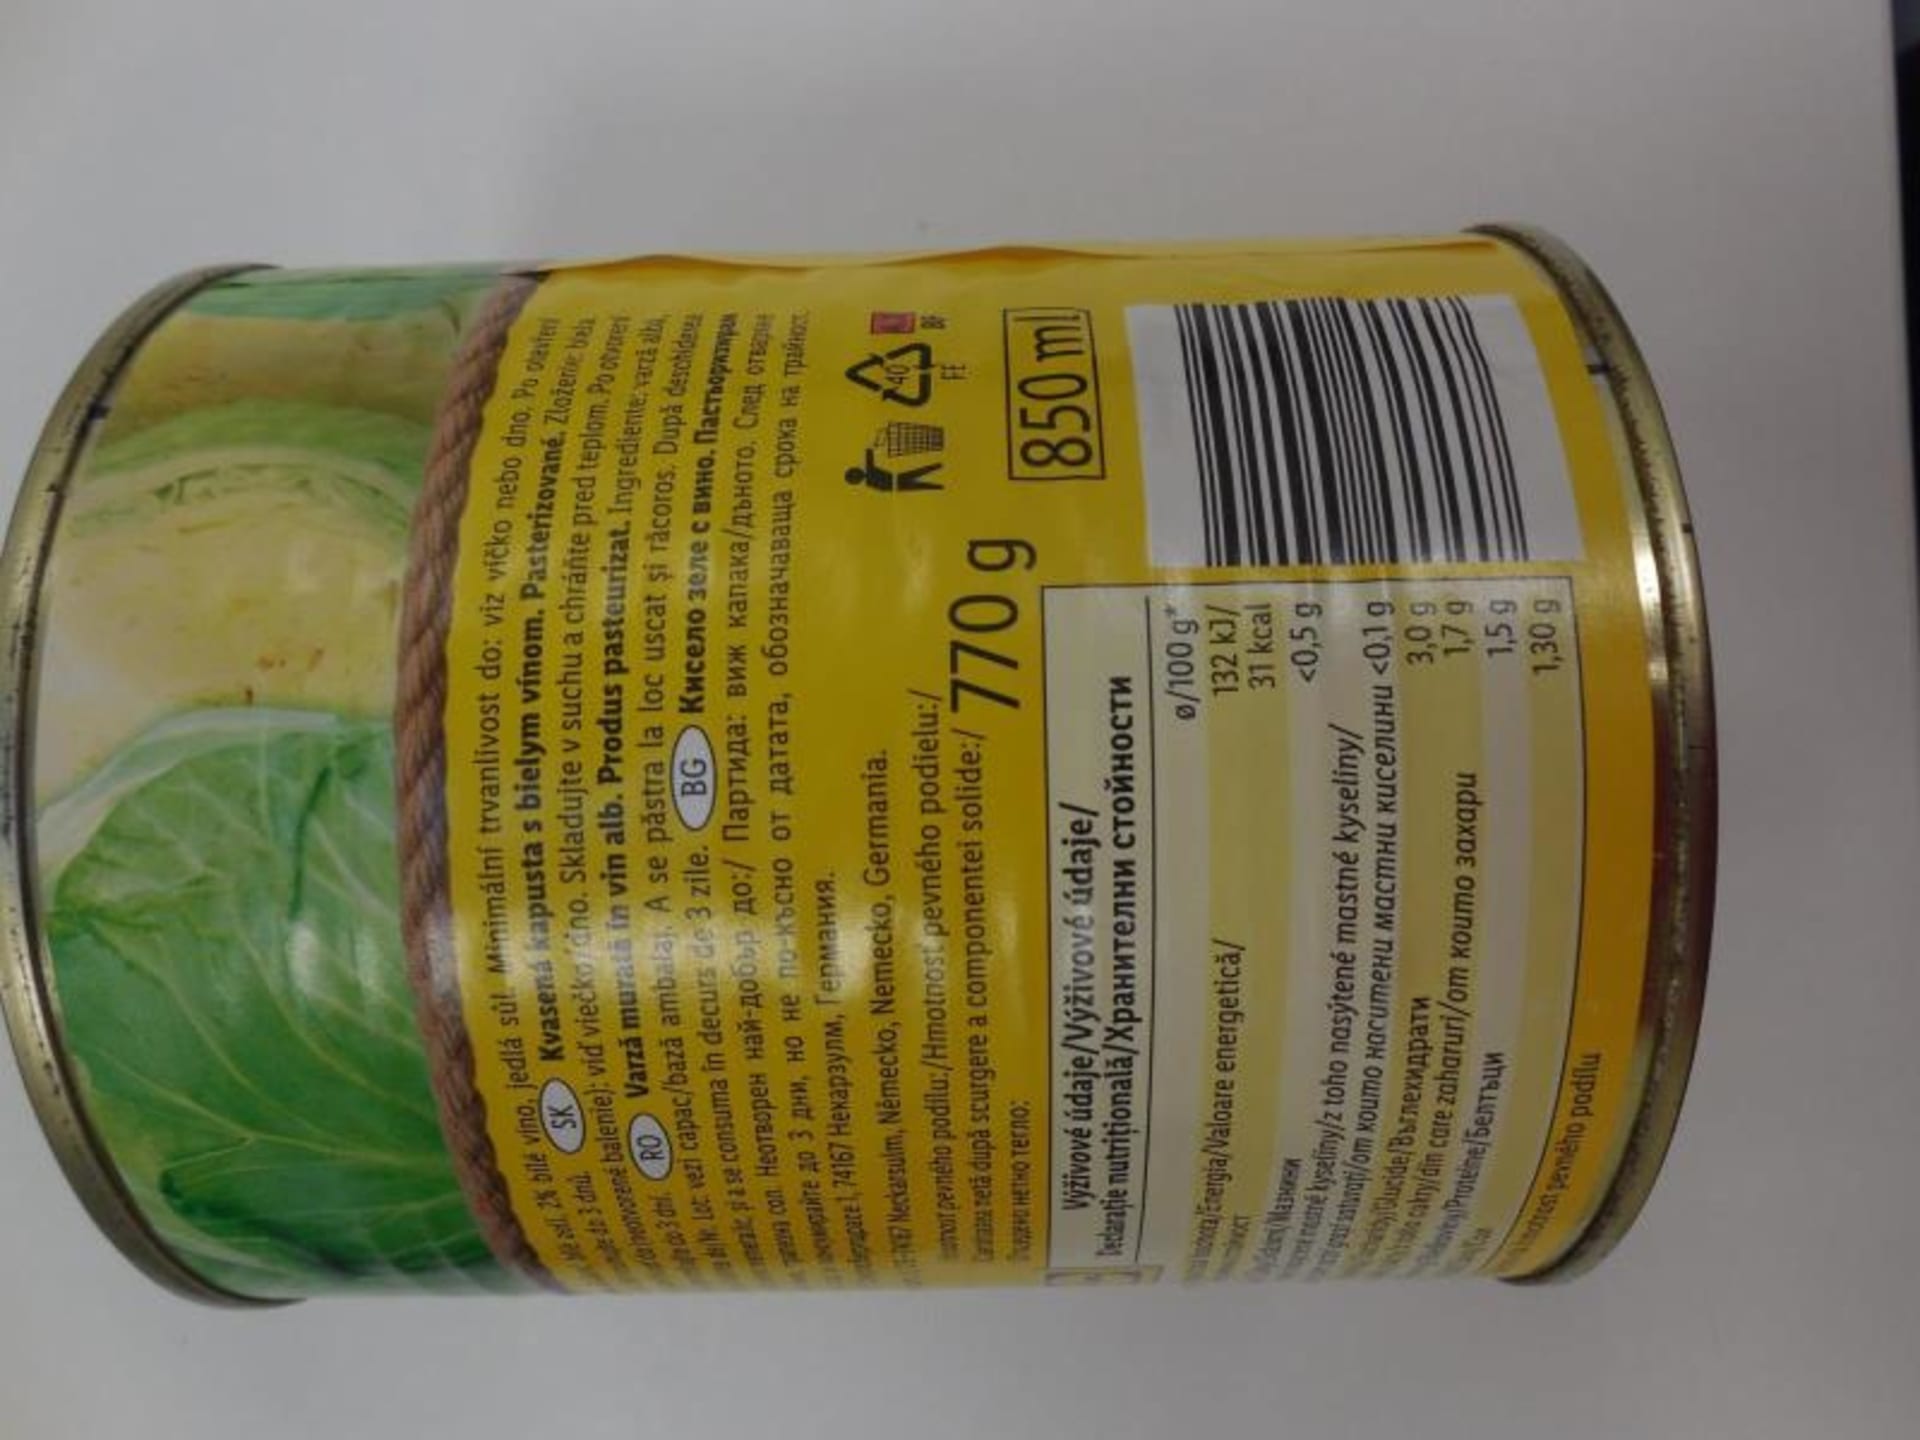 Státní potravinářská a zemědělská inspekce (SZPI) zajistila v prodejně obchodního řetězce Lidl závadnou konzervovanou zeleninu.